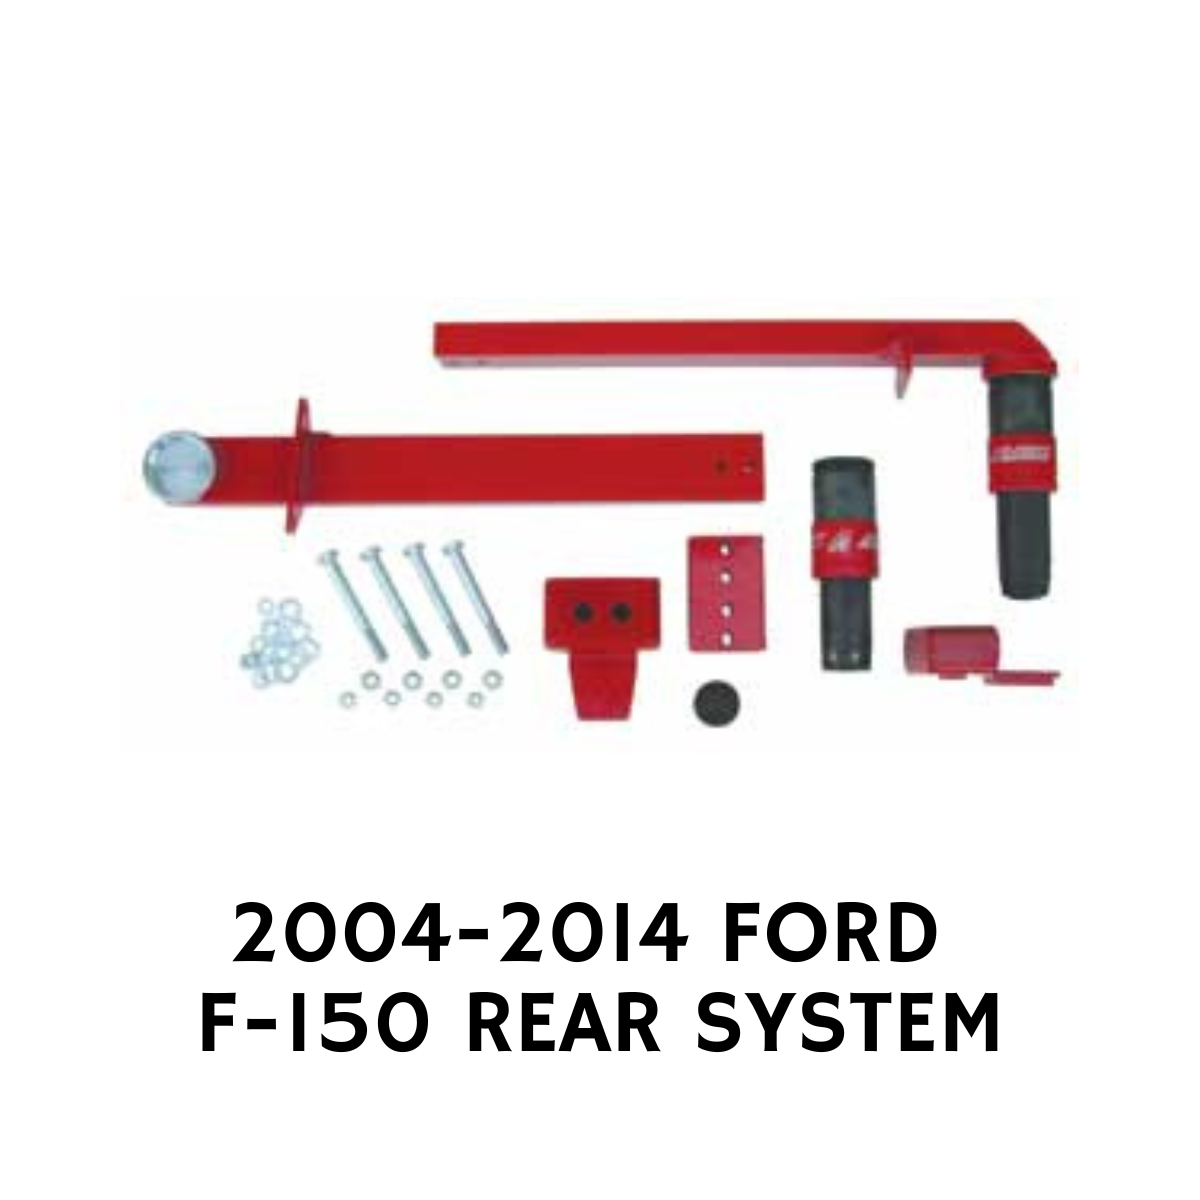 FORD F-150 REAR JOUNCESHOCK SYSTEM